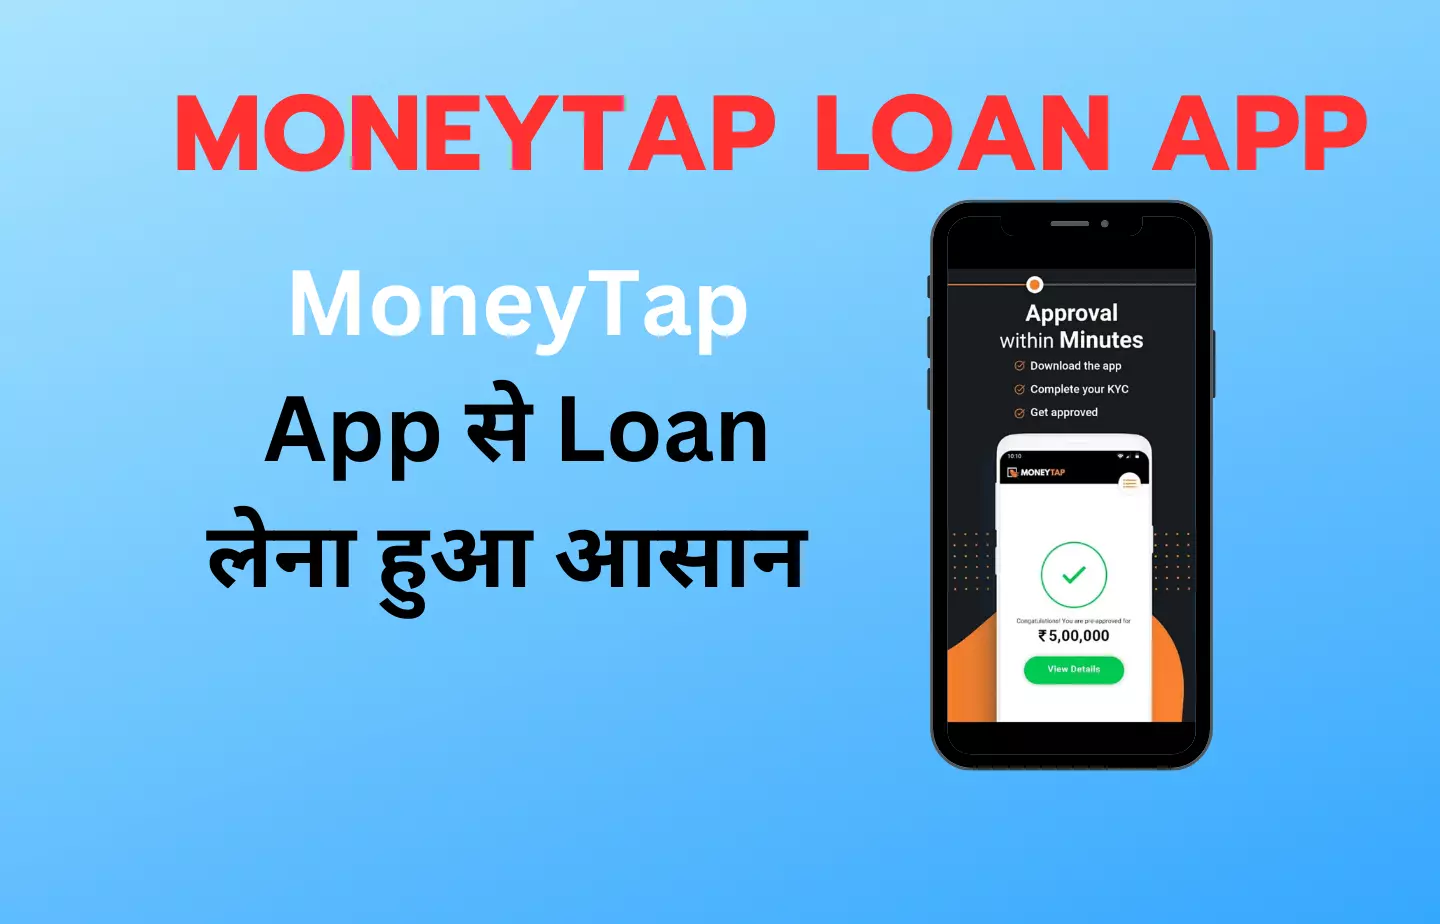 MoneyTap Loan App